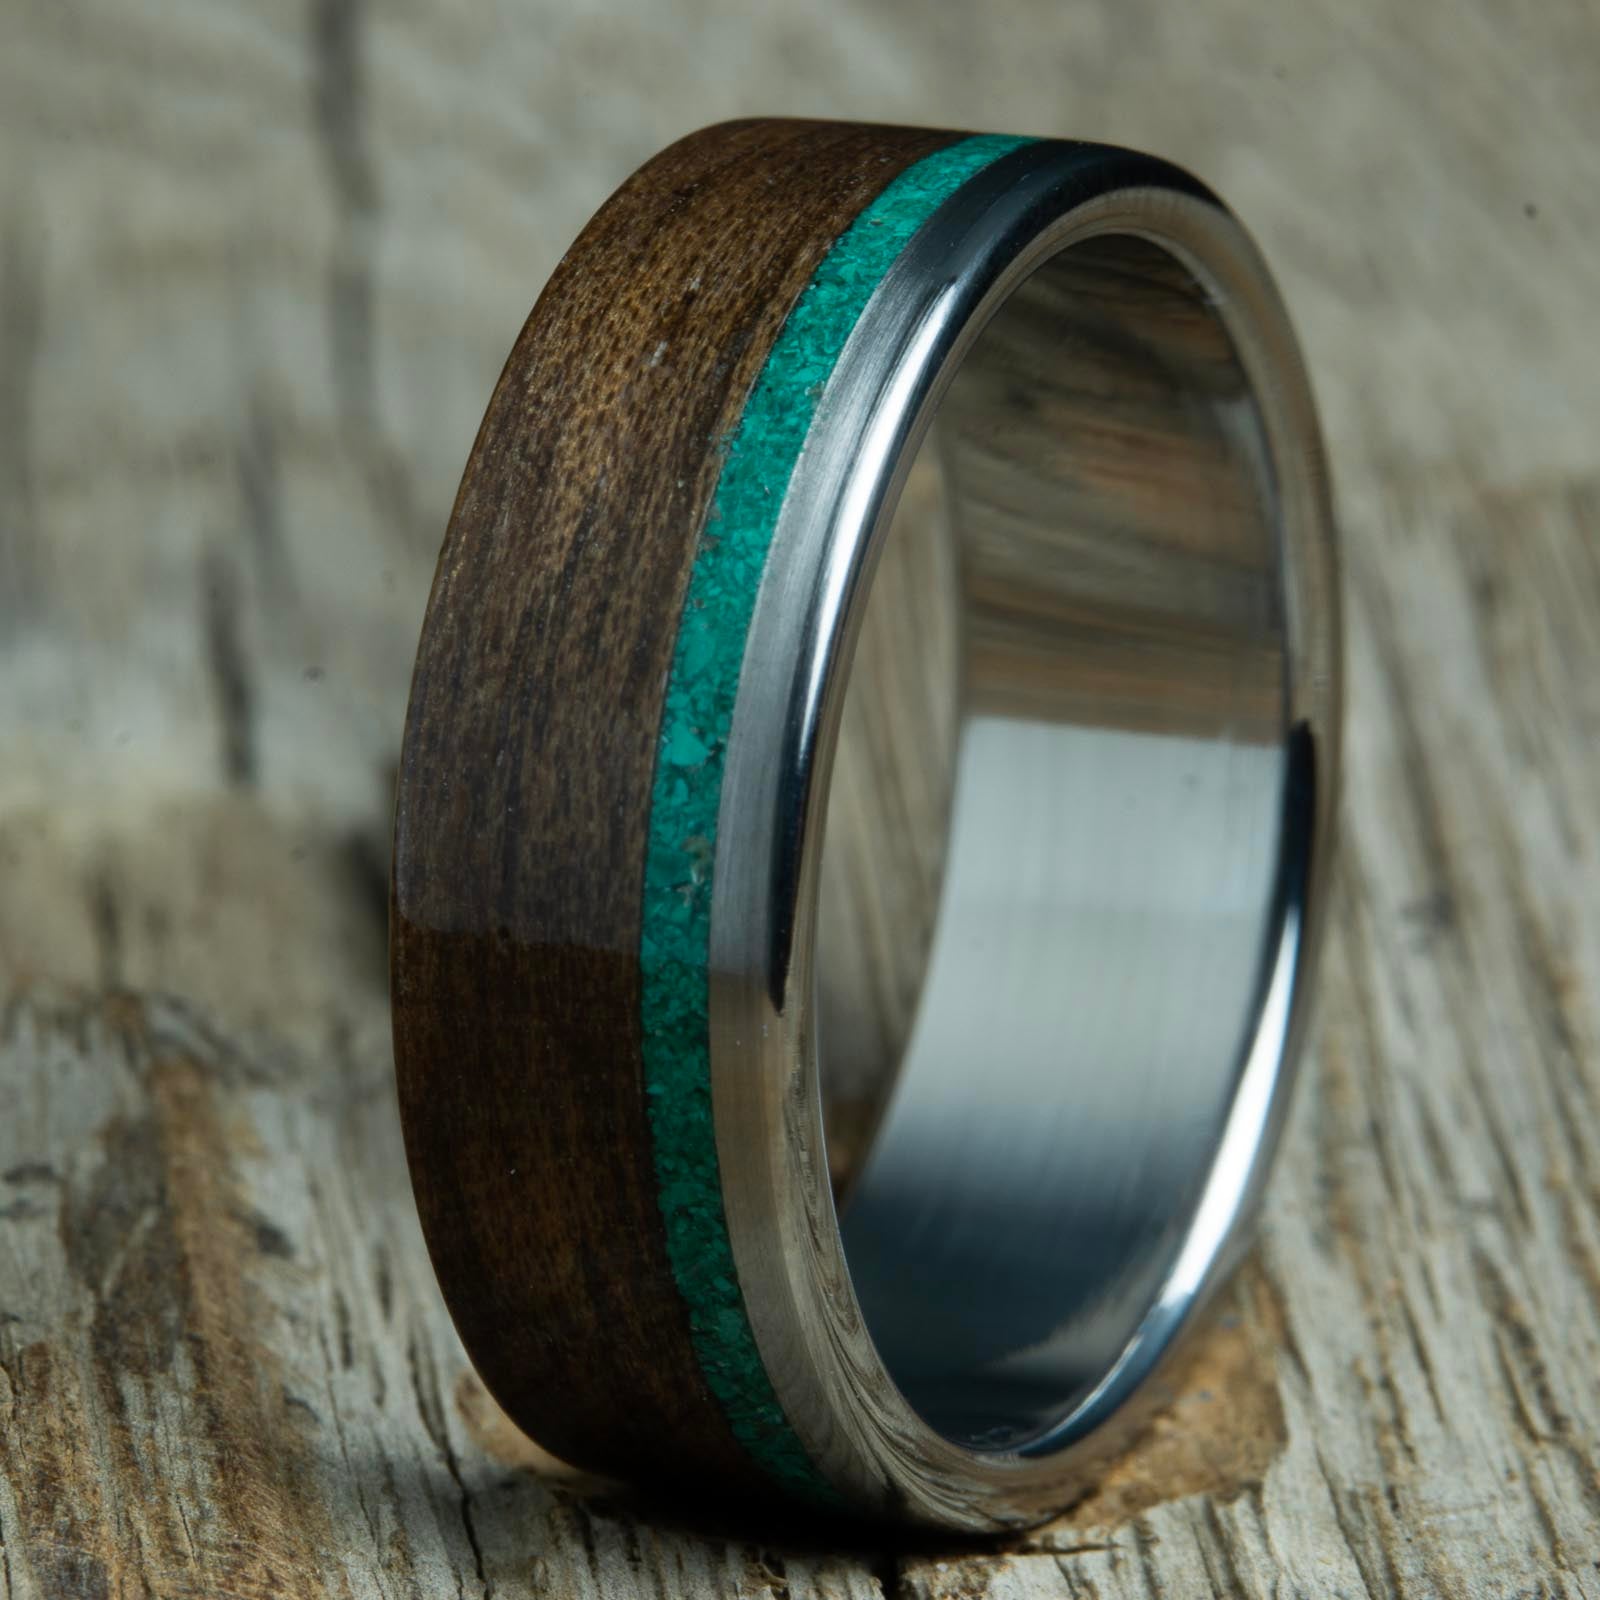 Malachite and Walnut wood wedding bands with polished titanium core